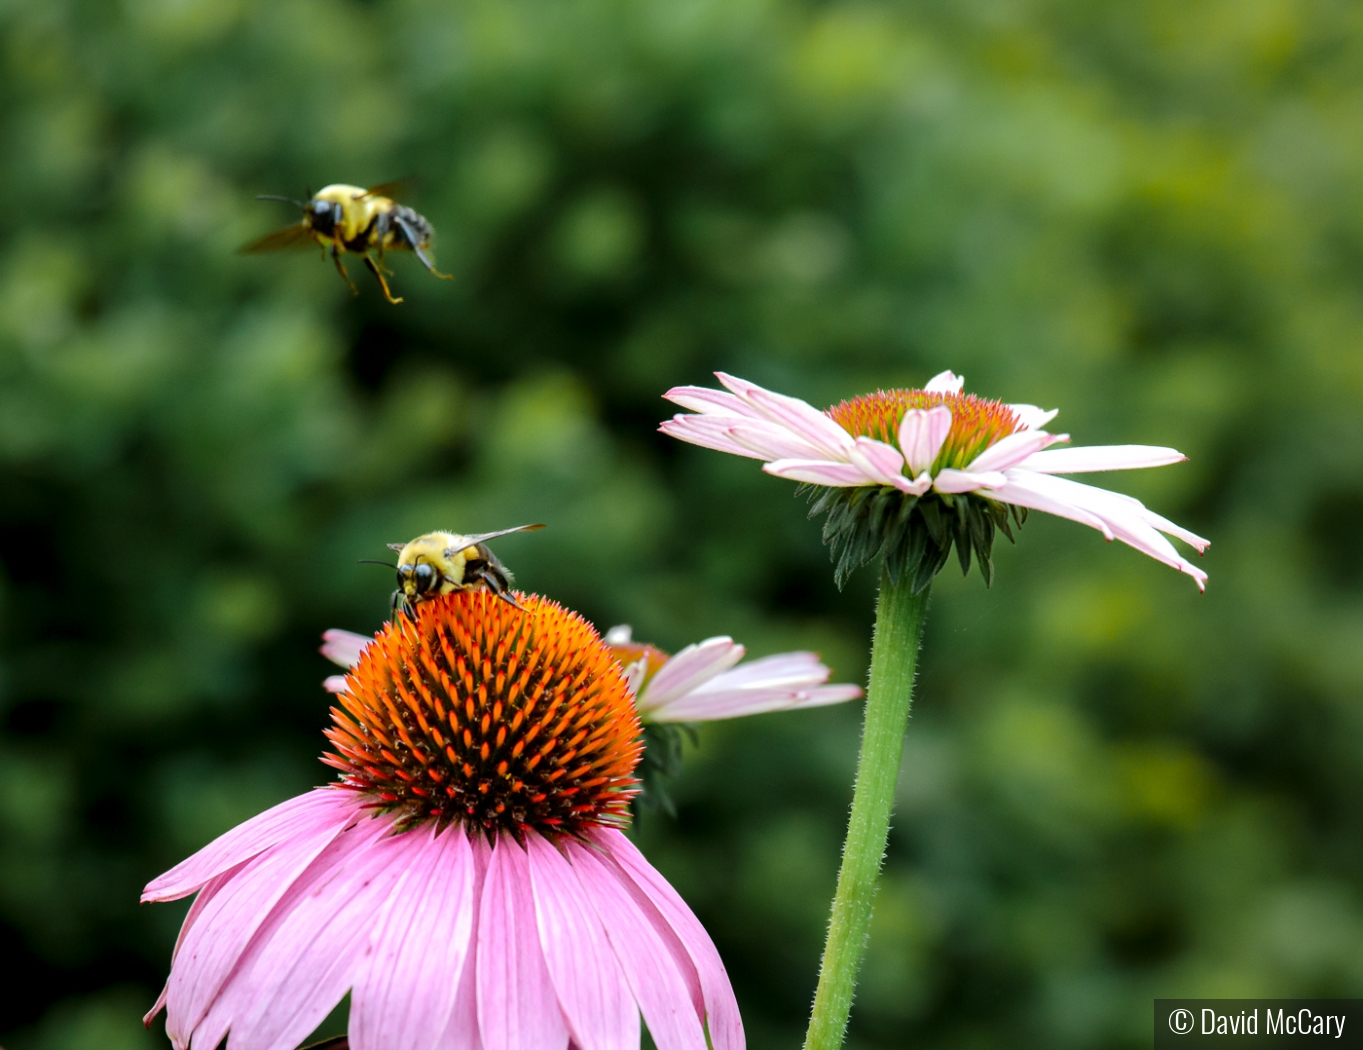 Bees Tag-teaming by David McCary